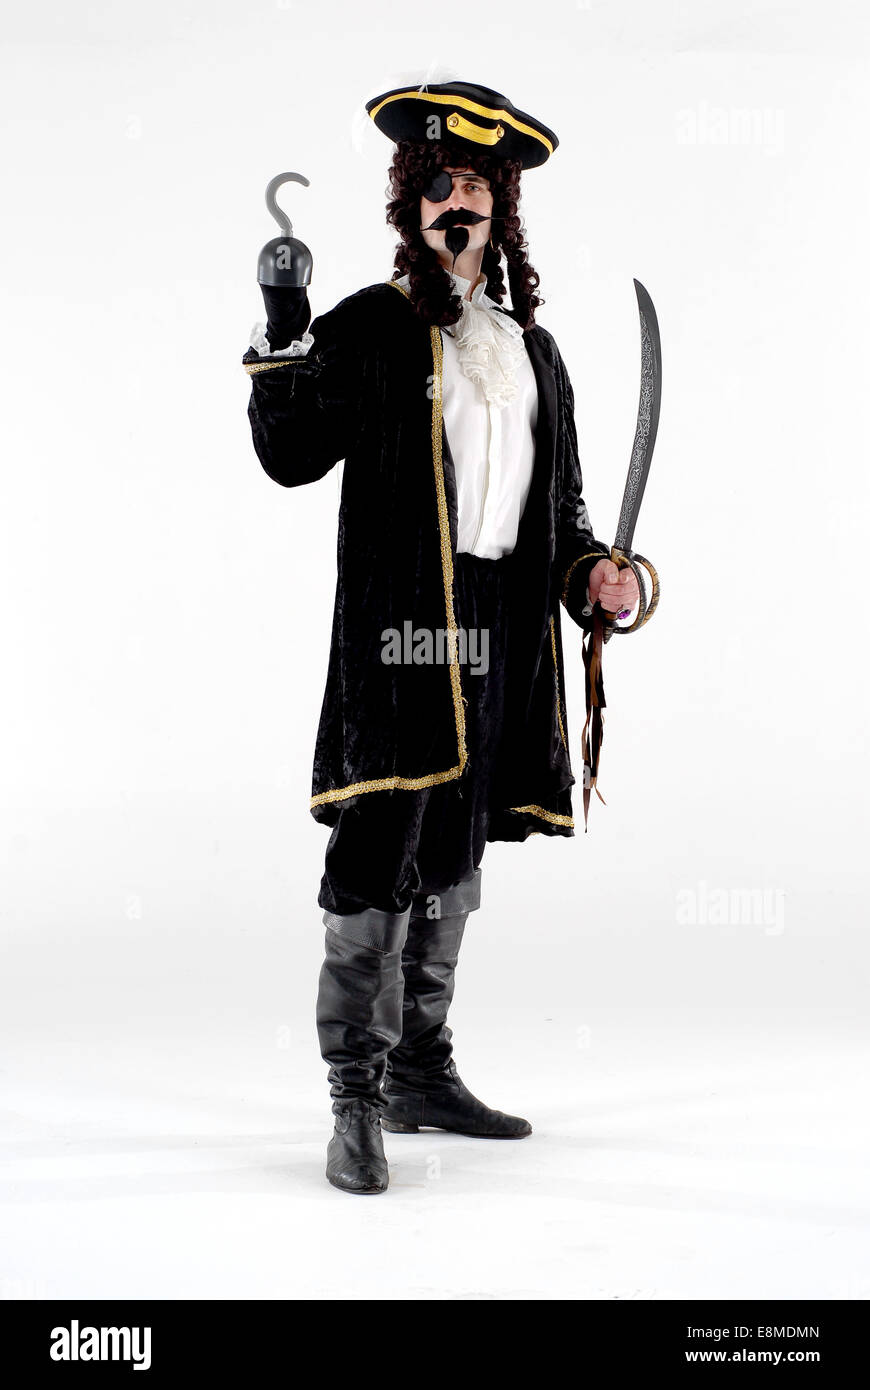 El hombre vestido con traje de comedia disfraces como el pirata Capitán  Garfio personaje de Peter Pan, sobre un fondo blanco Fotografía de stock -  Alamy